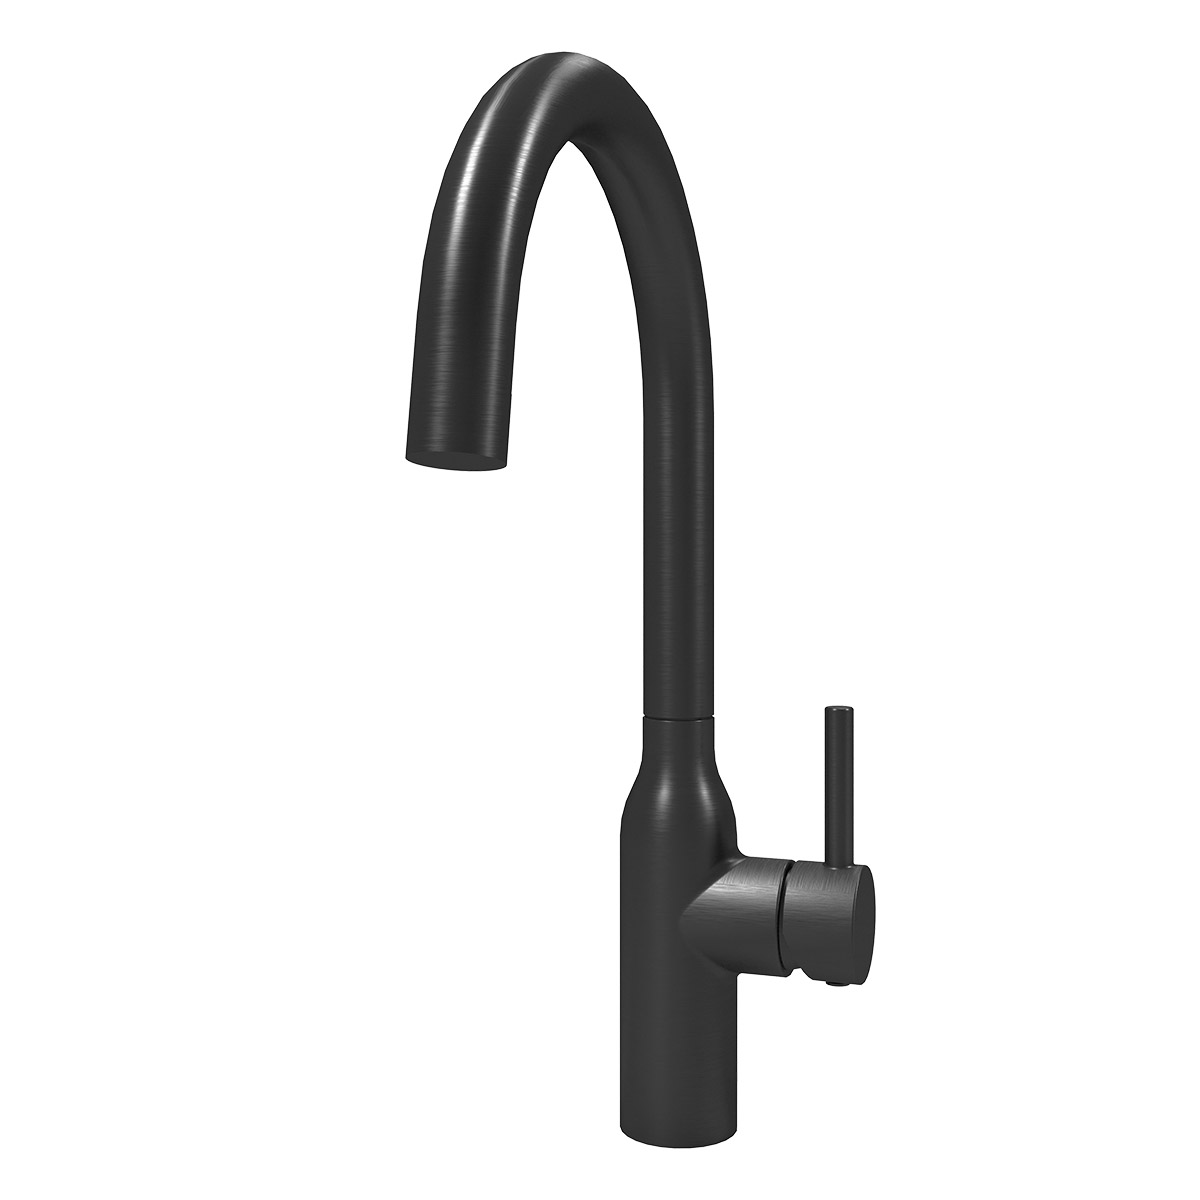 Eli single lever kitchen tap in black